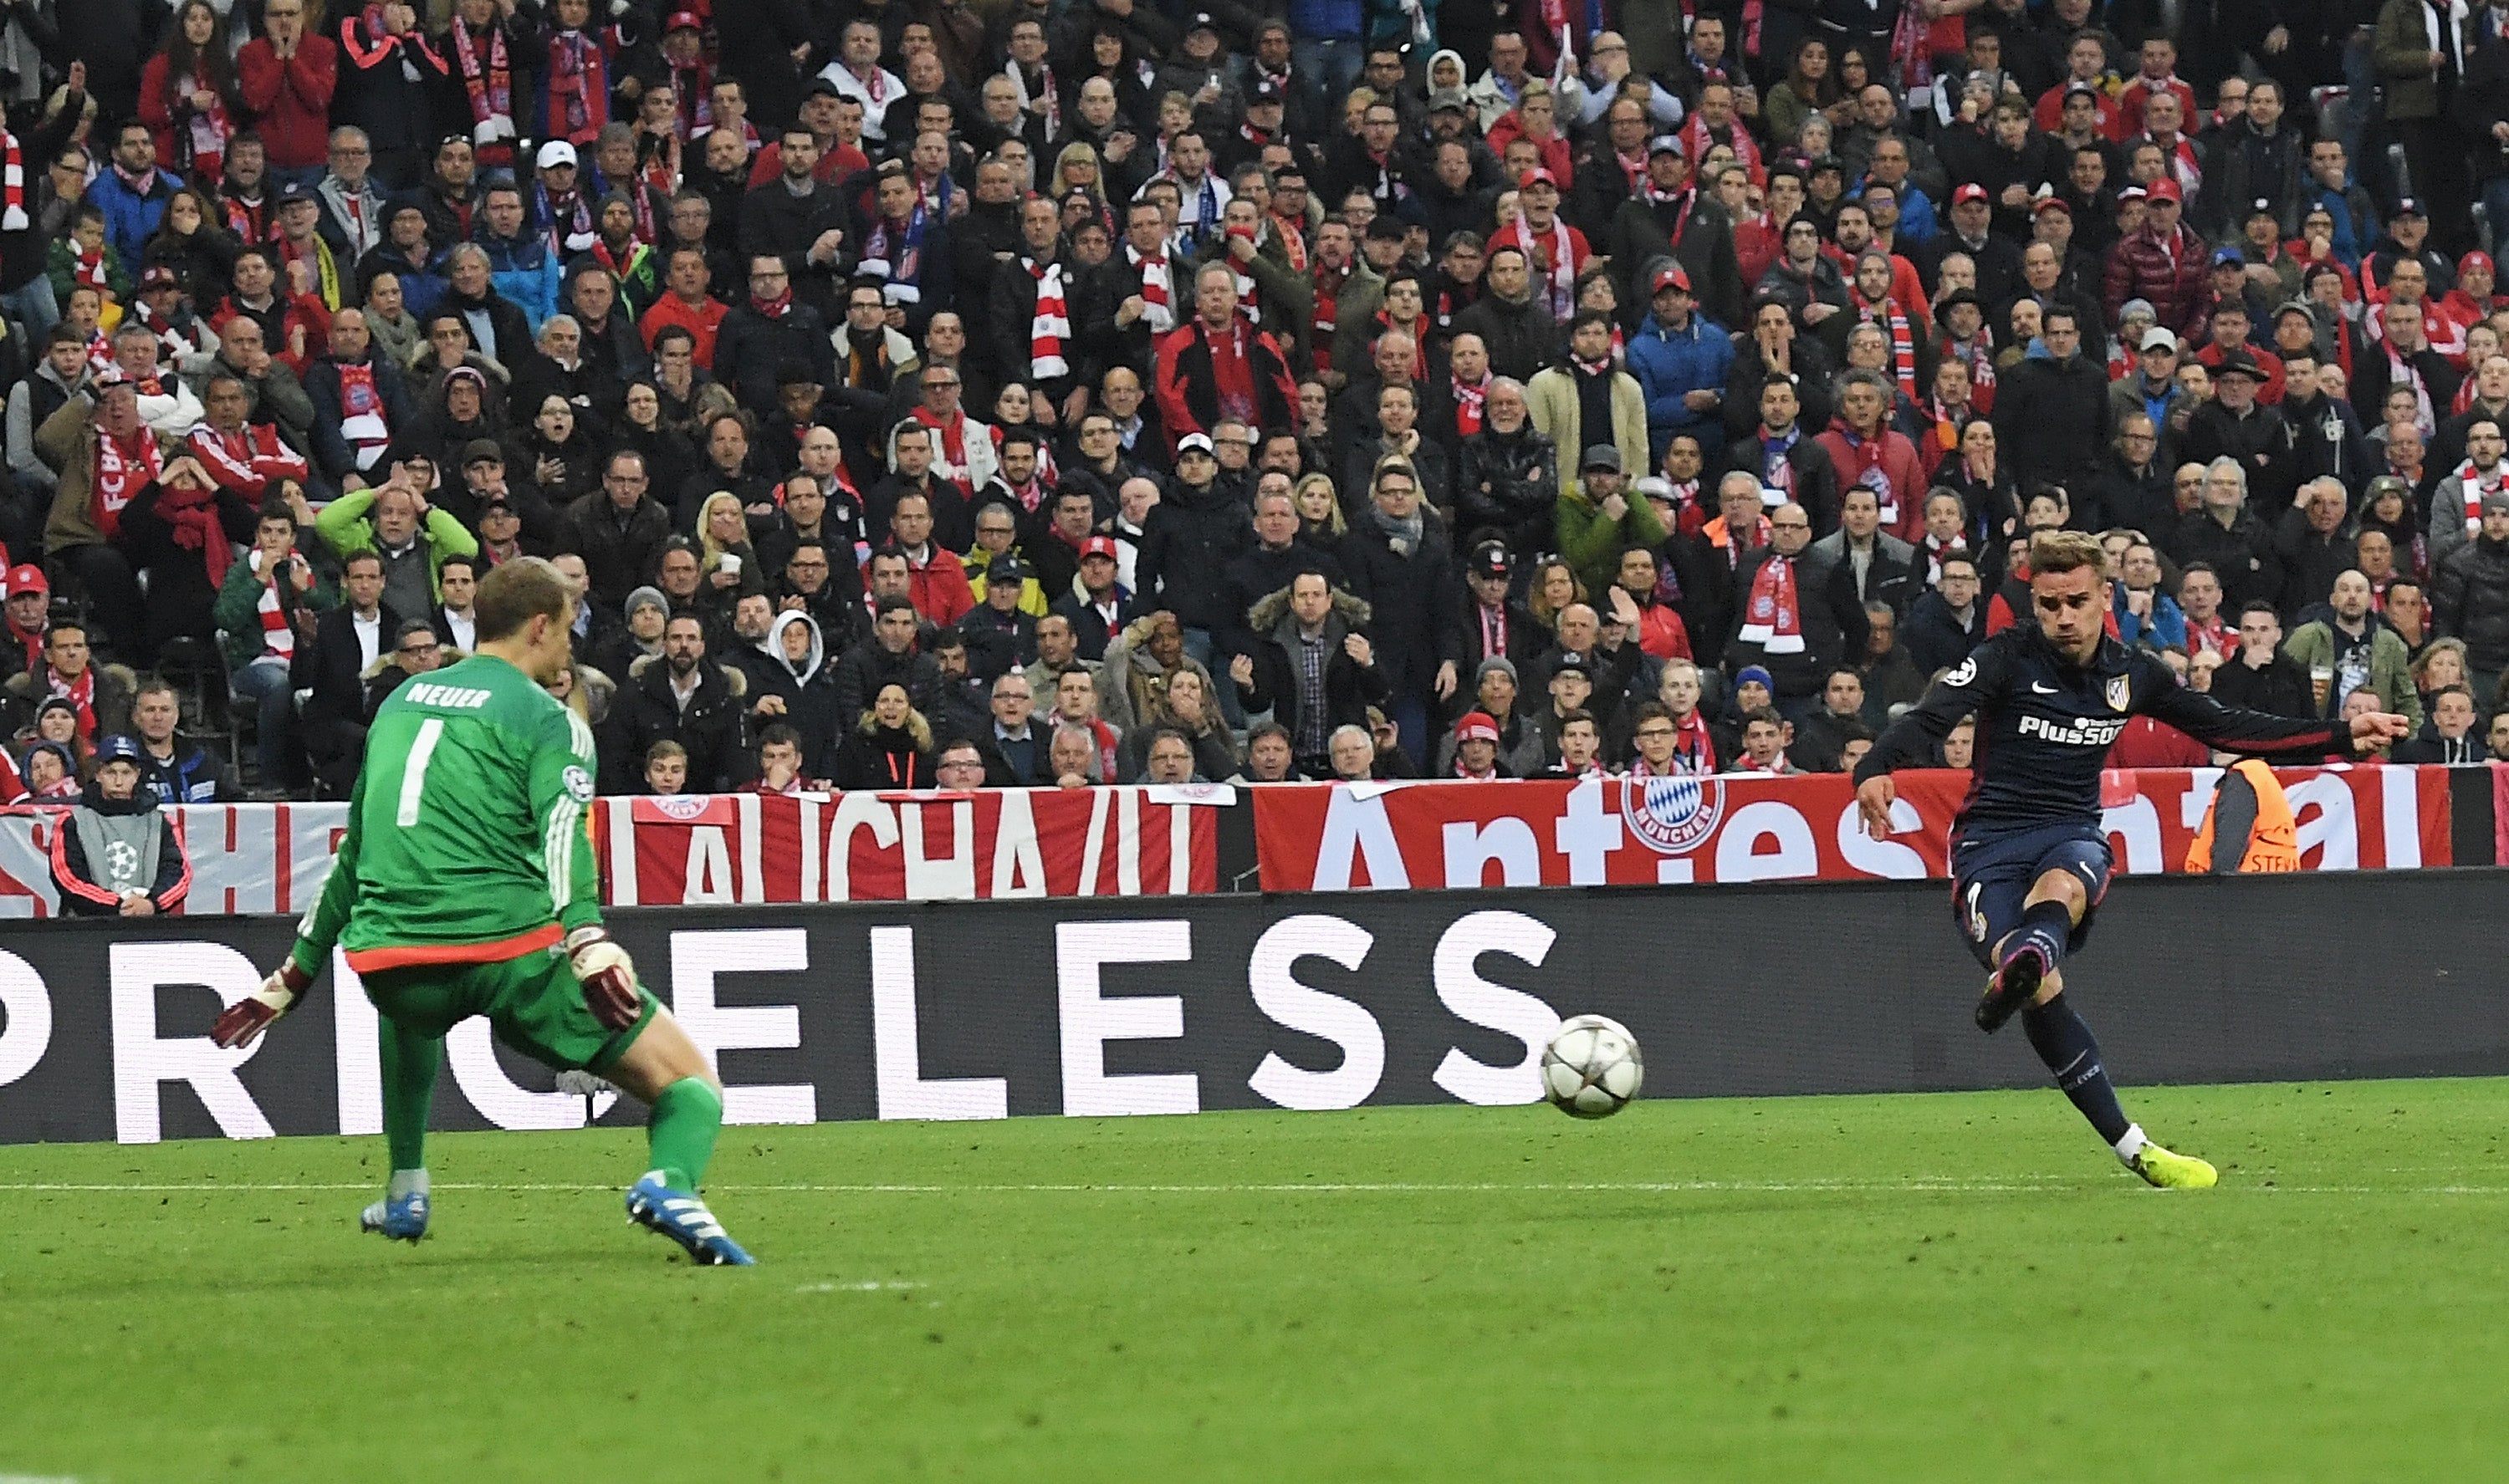 Antoine Criezmann anota el gol de visitante clave del Atlético